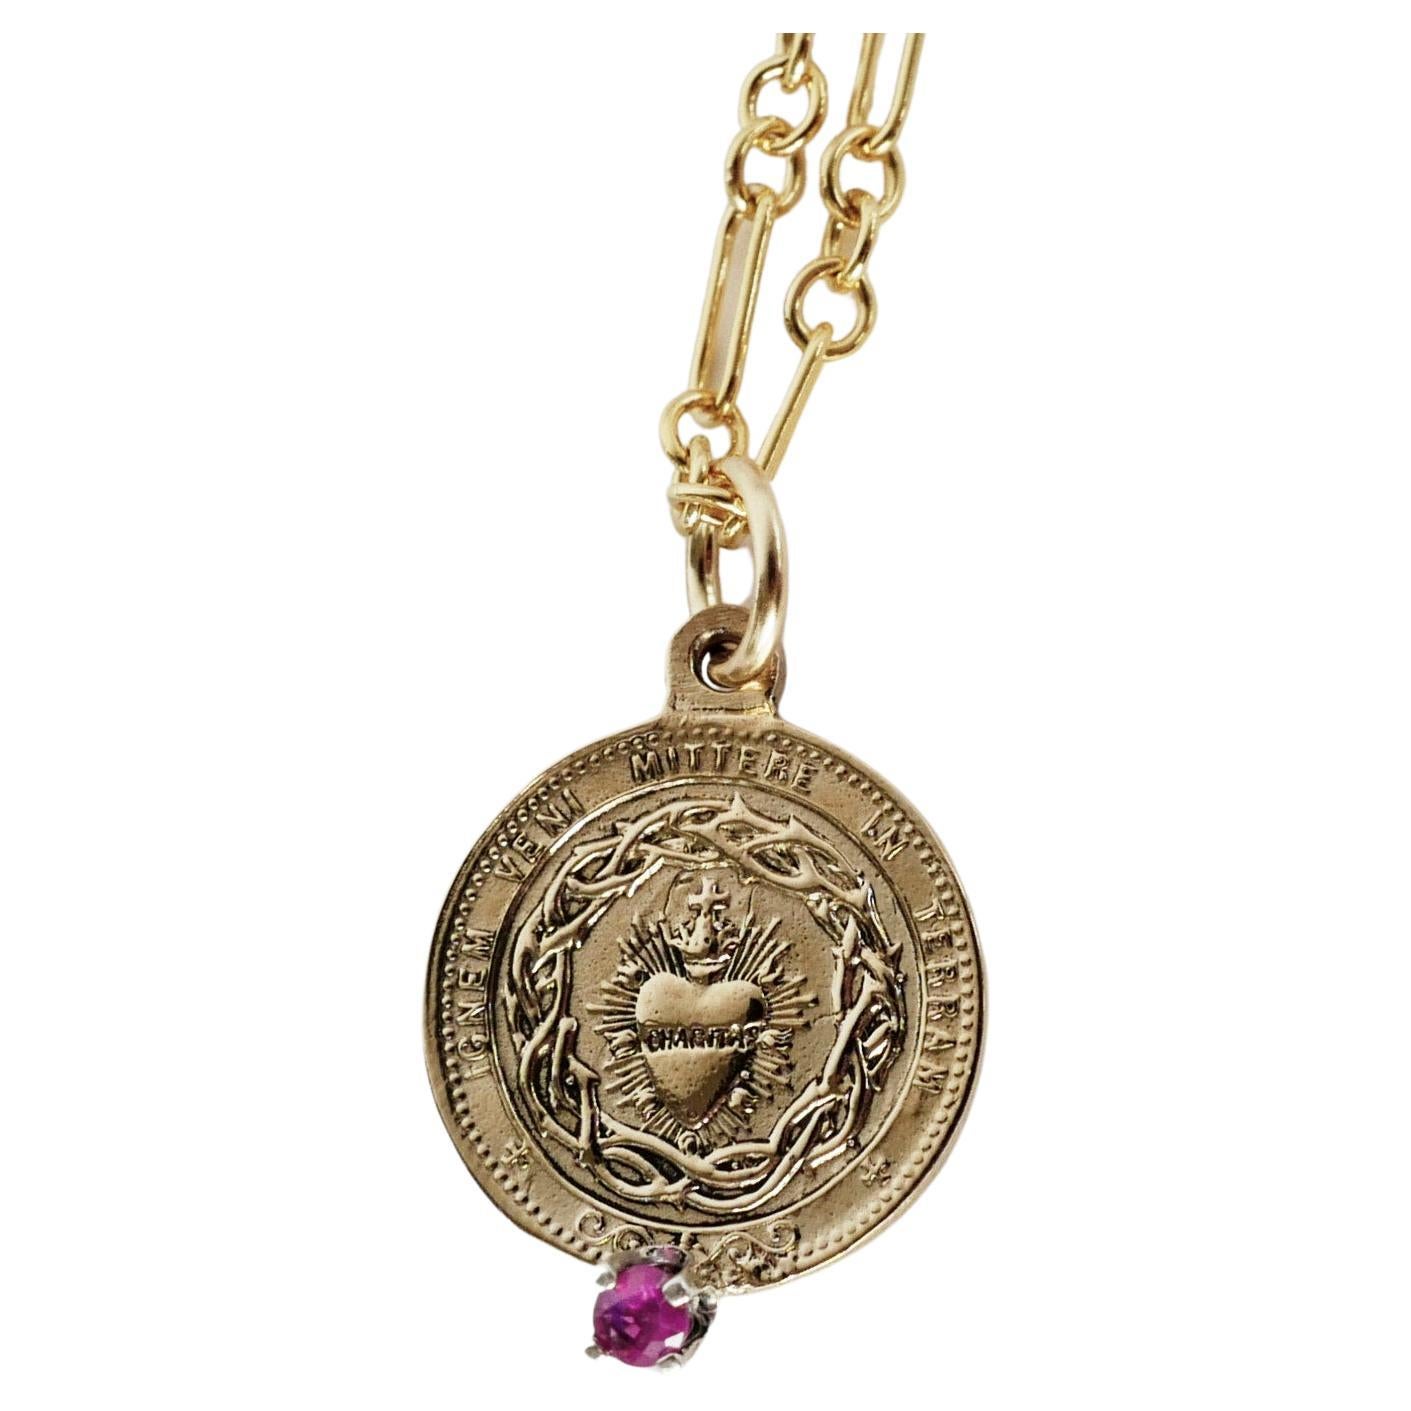 Rote Turmalin Heiliges Herz Münze Medaille Anhänger Gold gefüllt Kette Halskette

Das Heiligste Herz (auch bekannt als das Heiligste Herz Jesu) hat eine der tiefsten Bedeutungen in der römisch-katholischen Praxis. Das Symbol steht für das